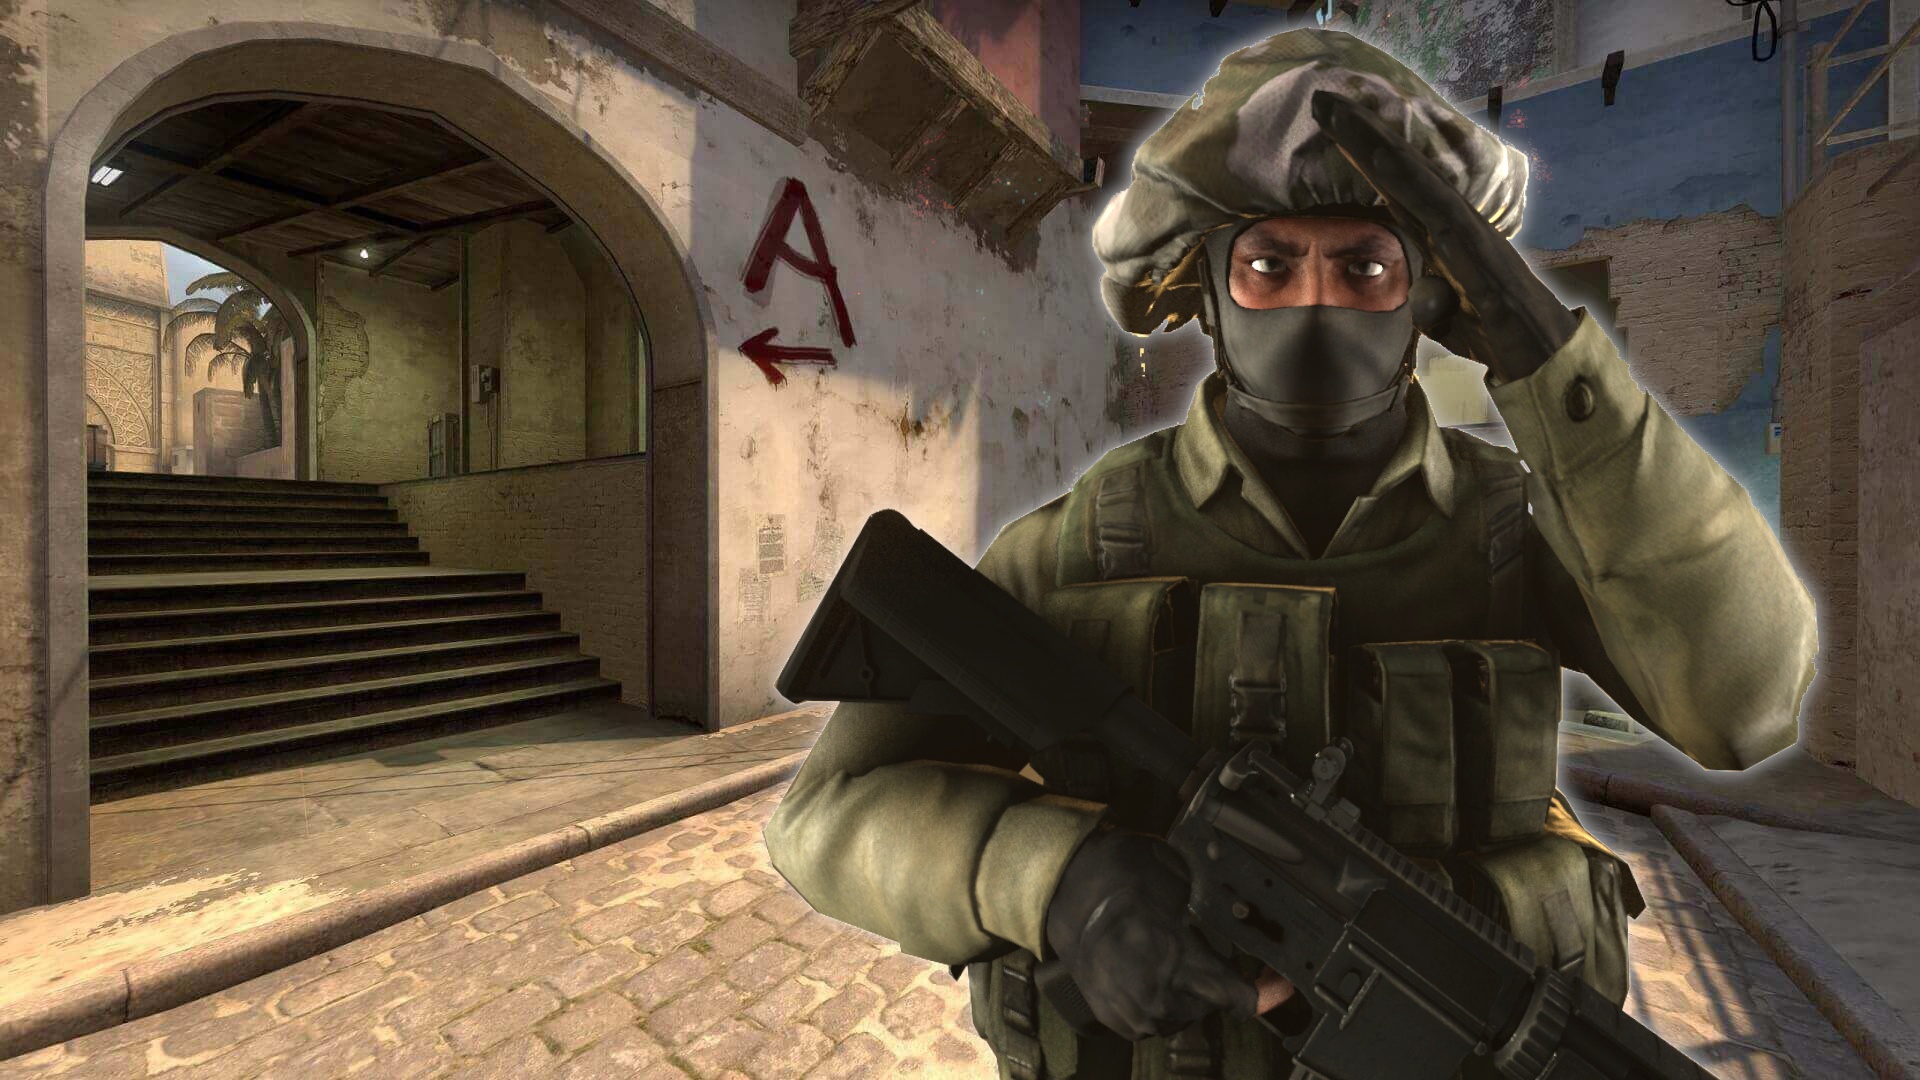 #Kurz vor Counter-Strike 2 bekommt CS:GO einen rührenden Abschied – und ein ganzer Saal schweigt